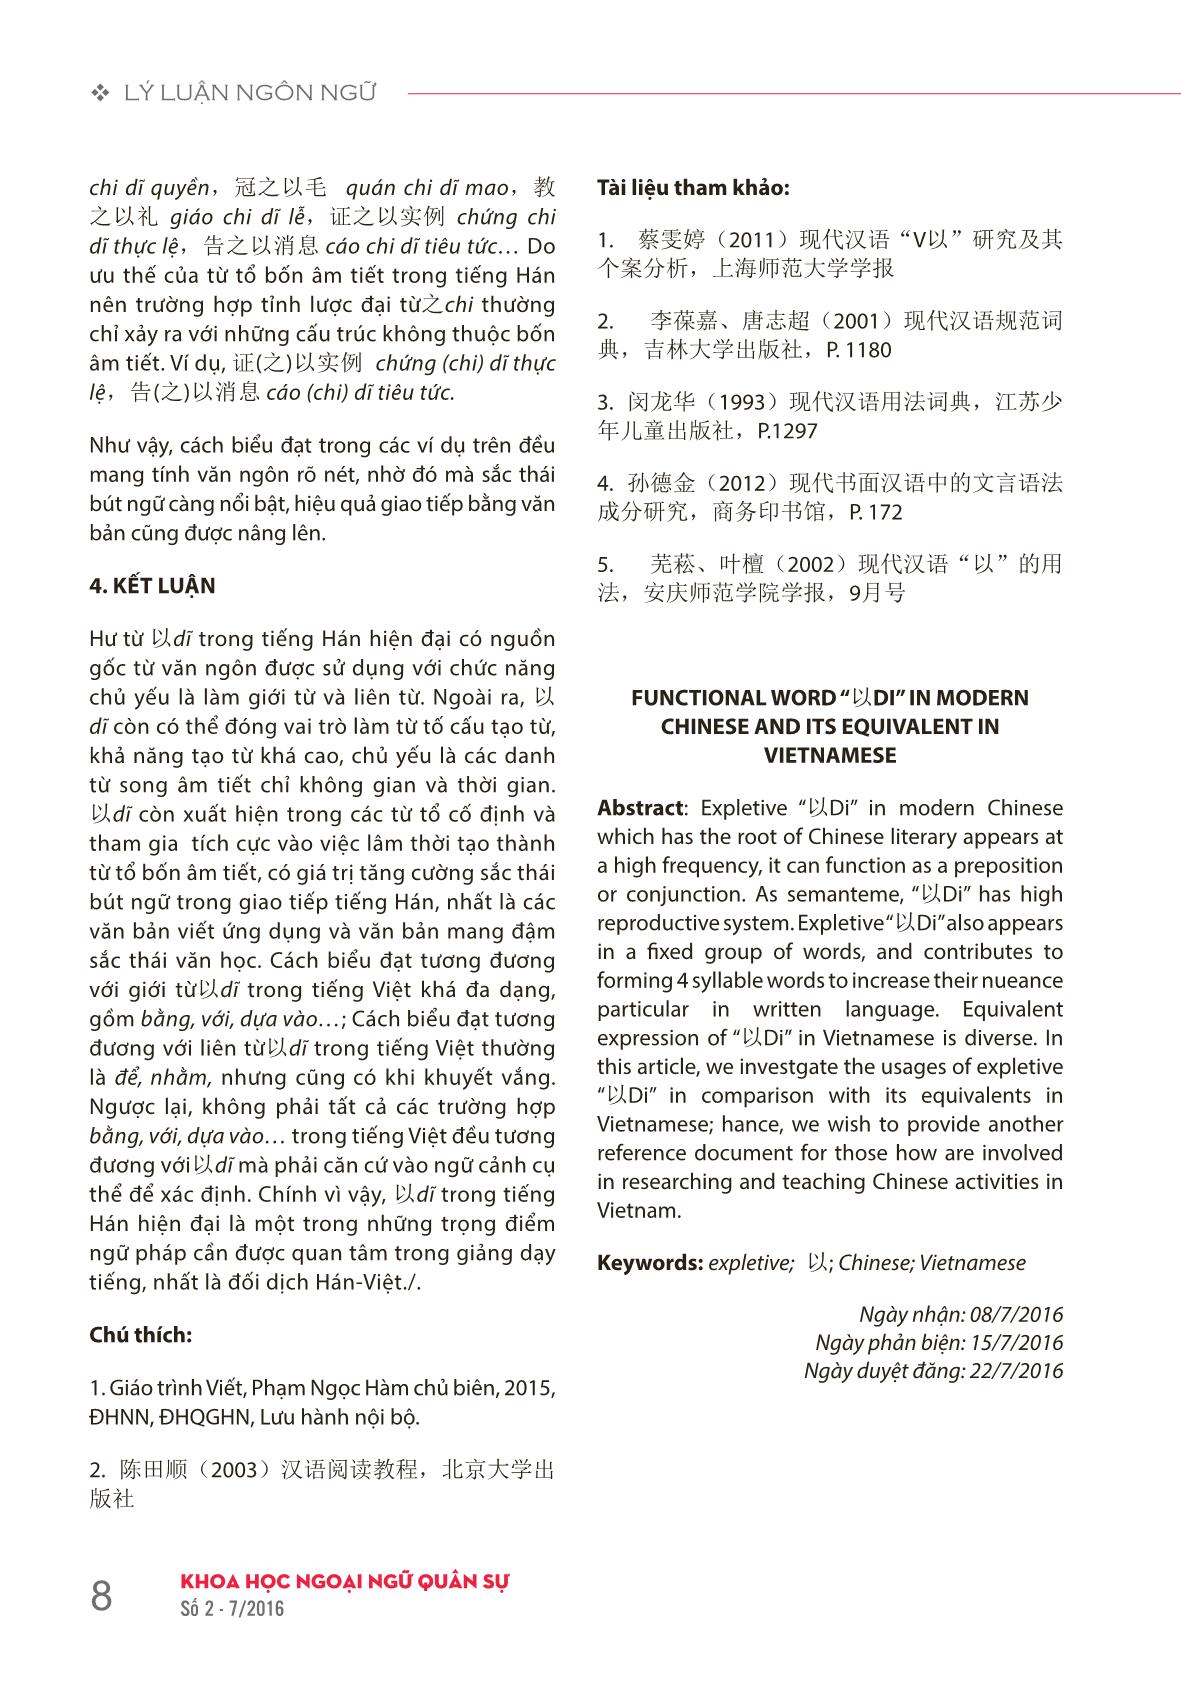 Hư từ 以 dĩ trong tiếng Hán hiện đại và cách biểu đạt tương đương trong tiếng Việt trang 6